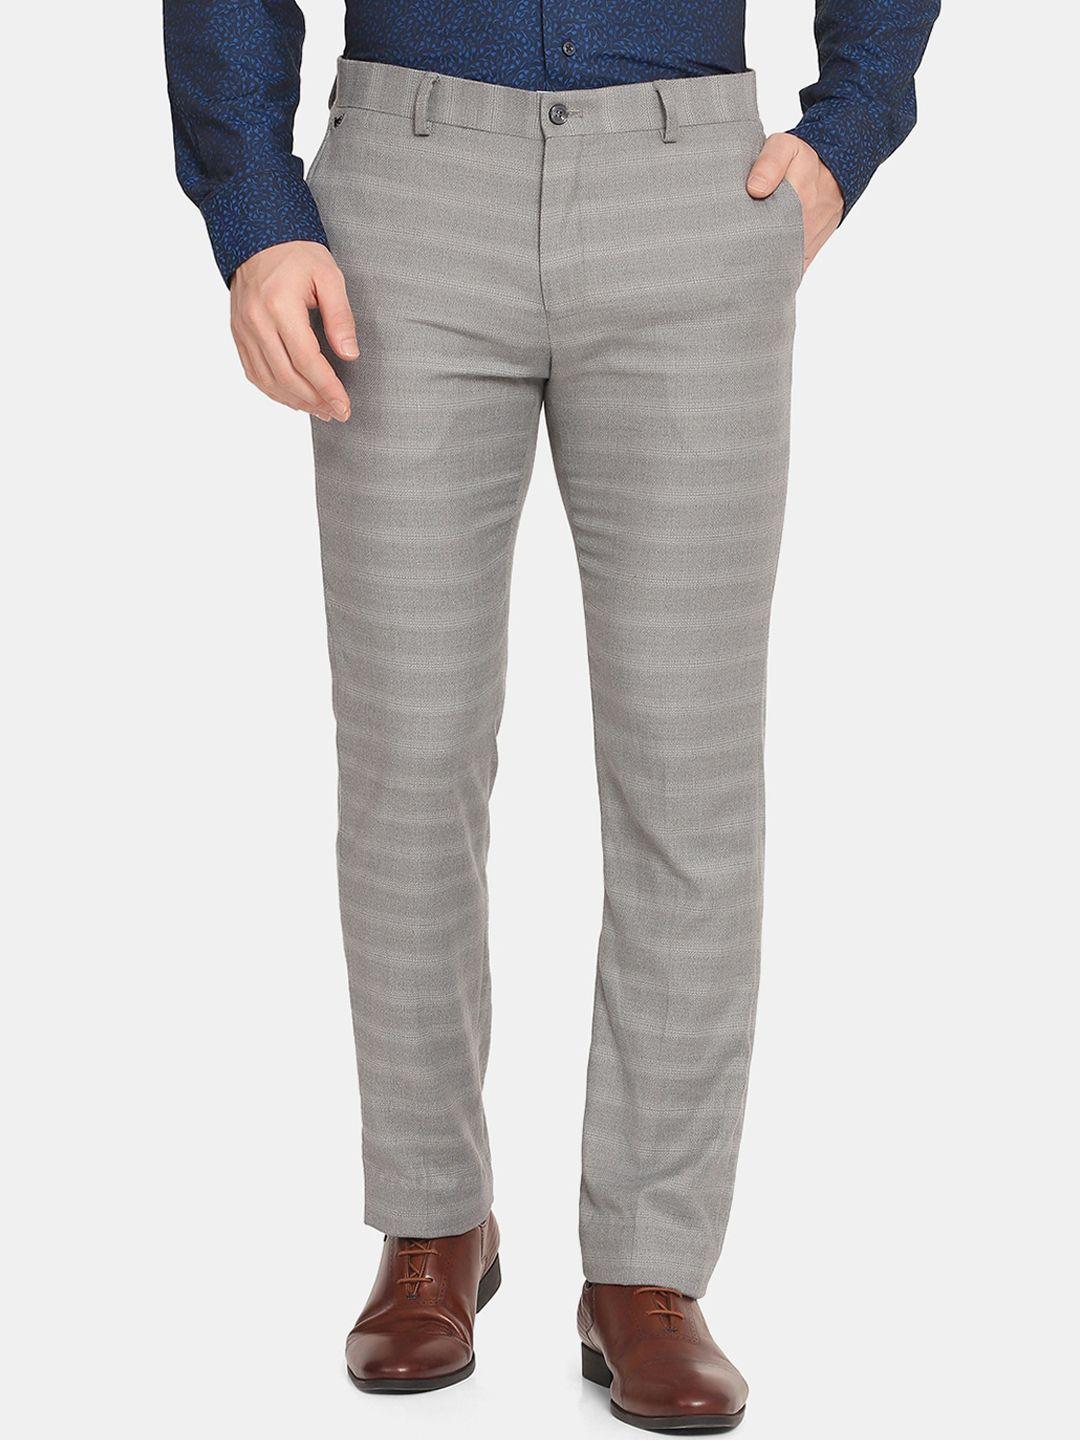 blackberrys-men-grey-striped-slim-fit-low-rise-trousers